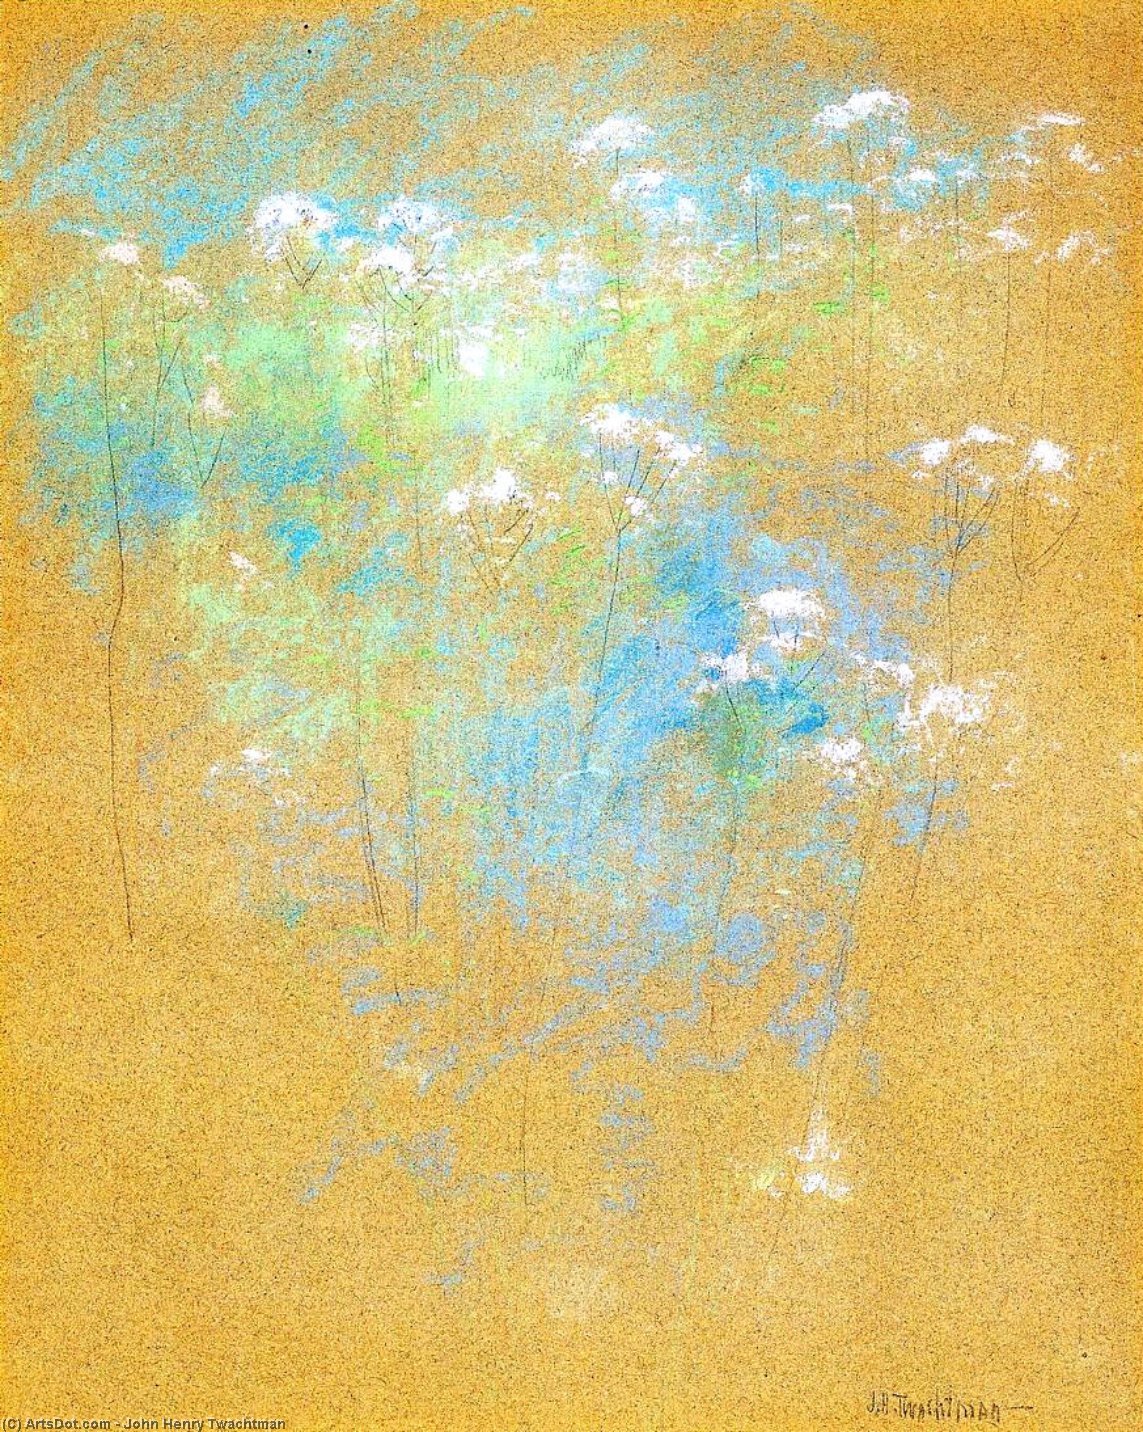 WikiOO.org - Encyclopedia of Fine Arts - Malba, Artwork John Henry Twachtman - Flowers